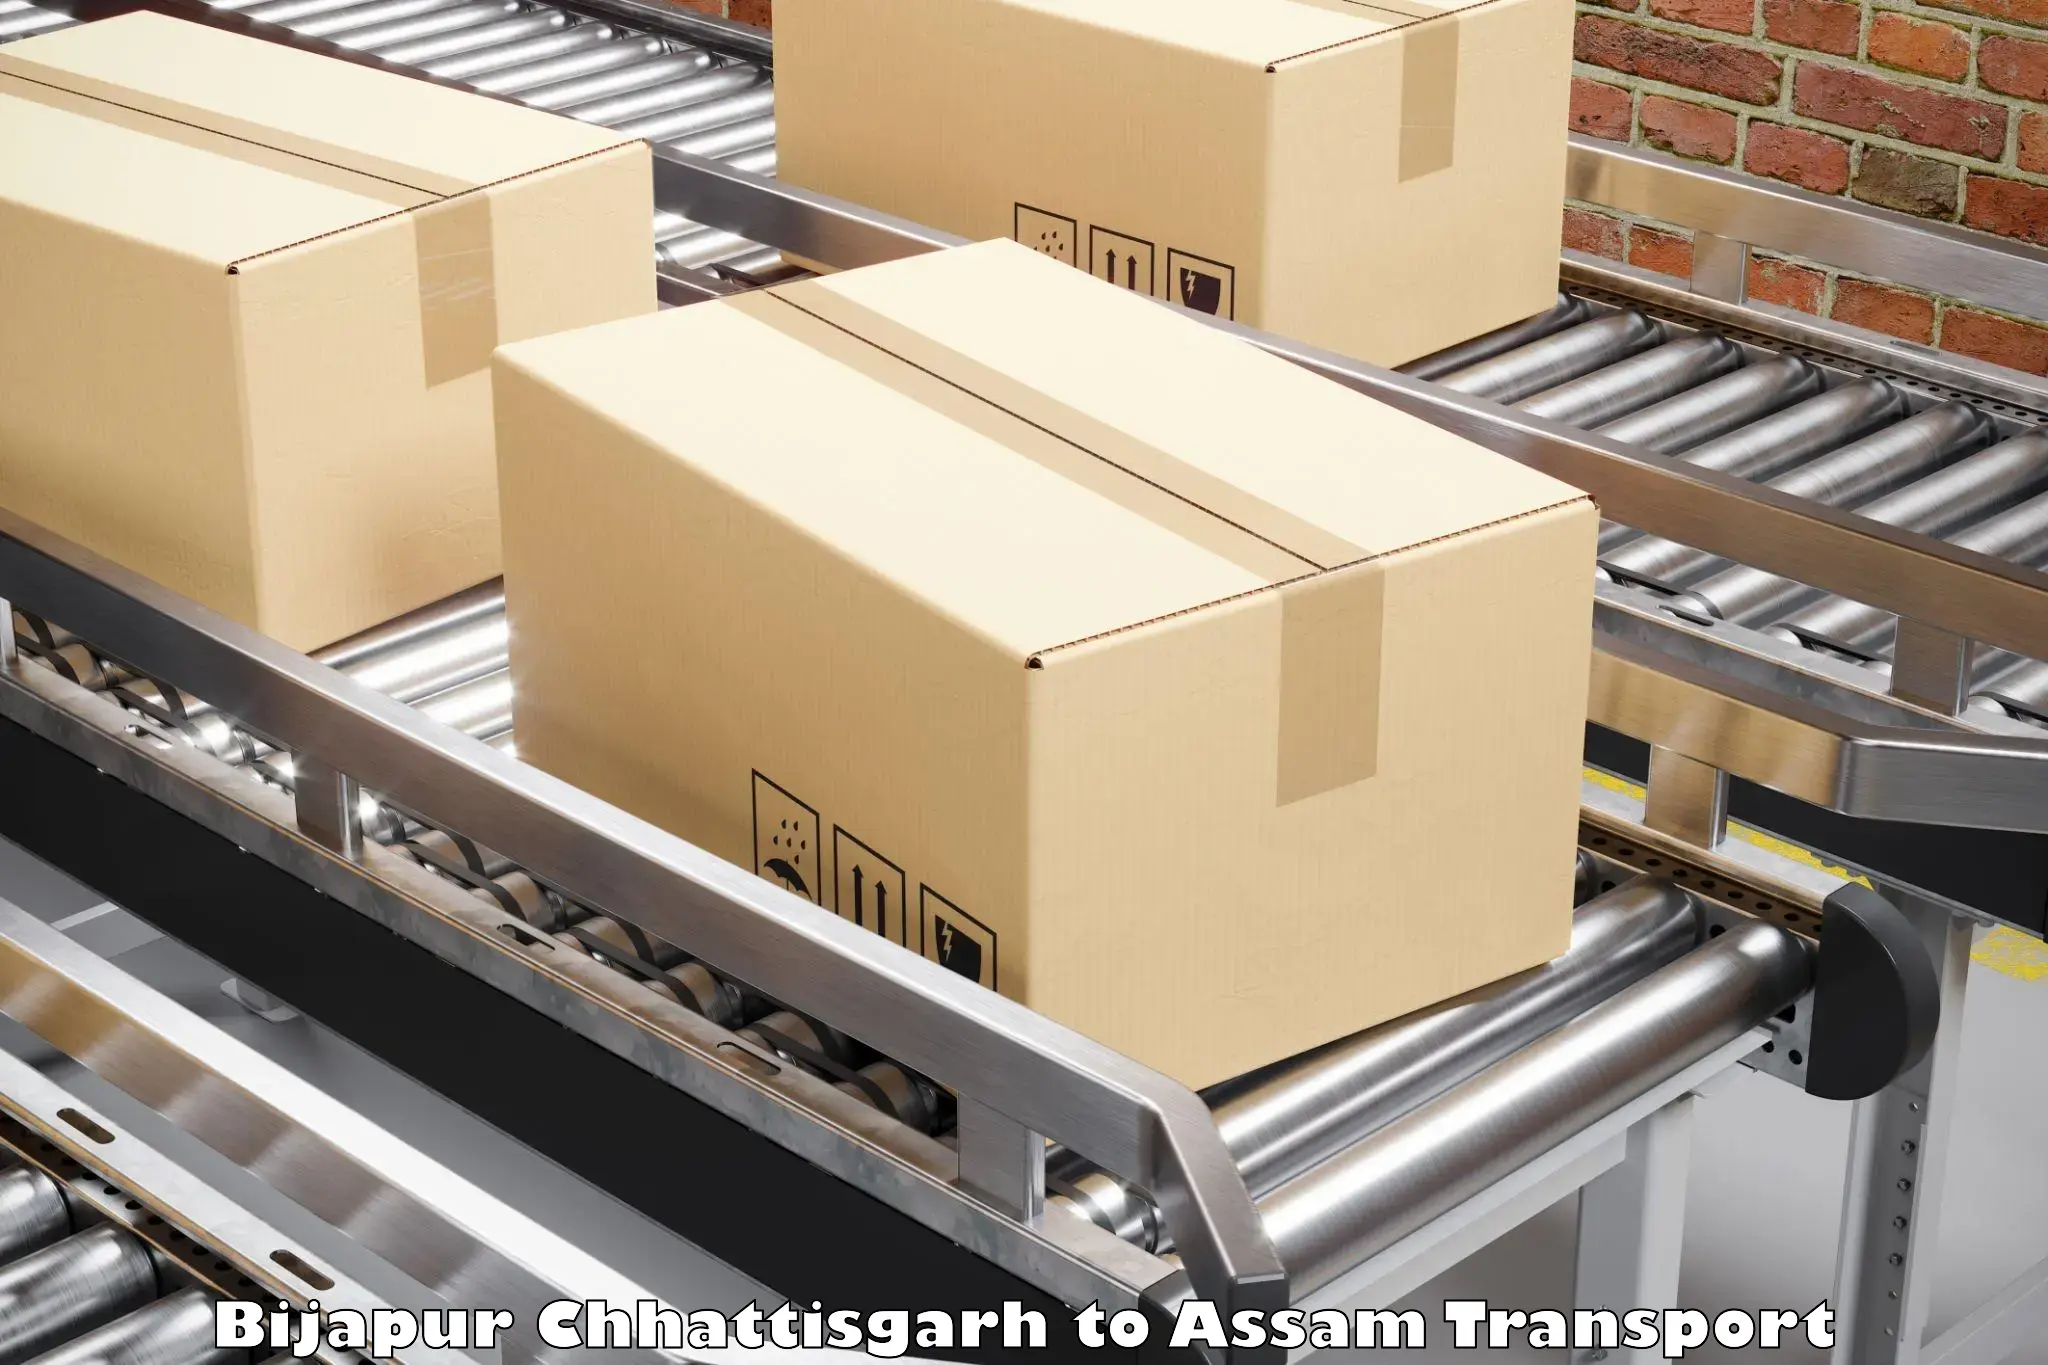 Delivery service Bijapur Chhattisgarh to Assam